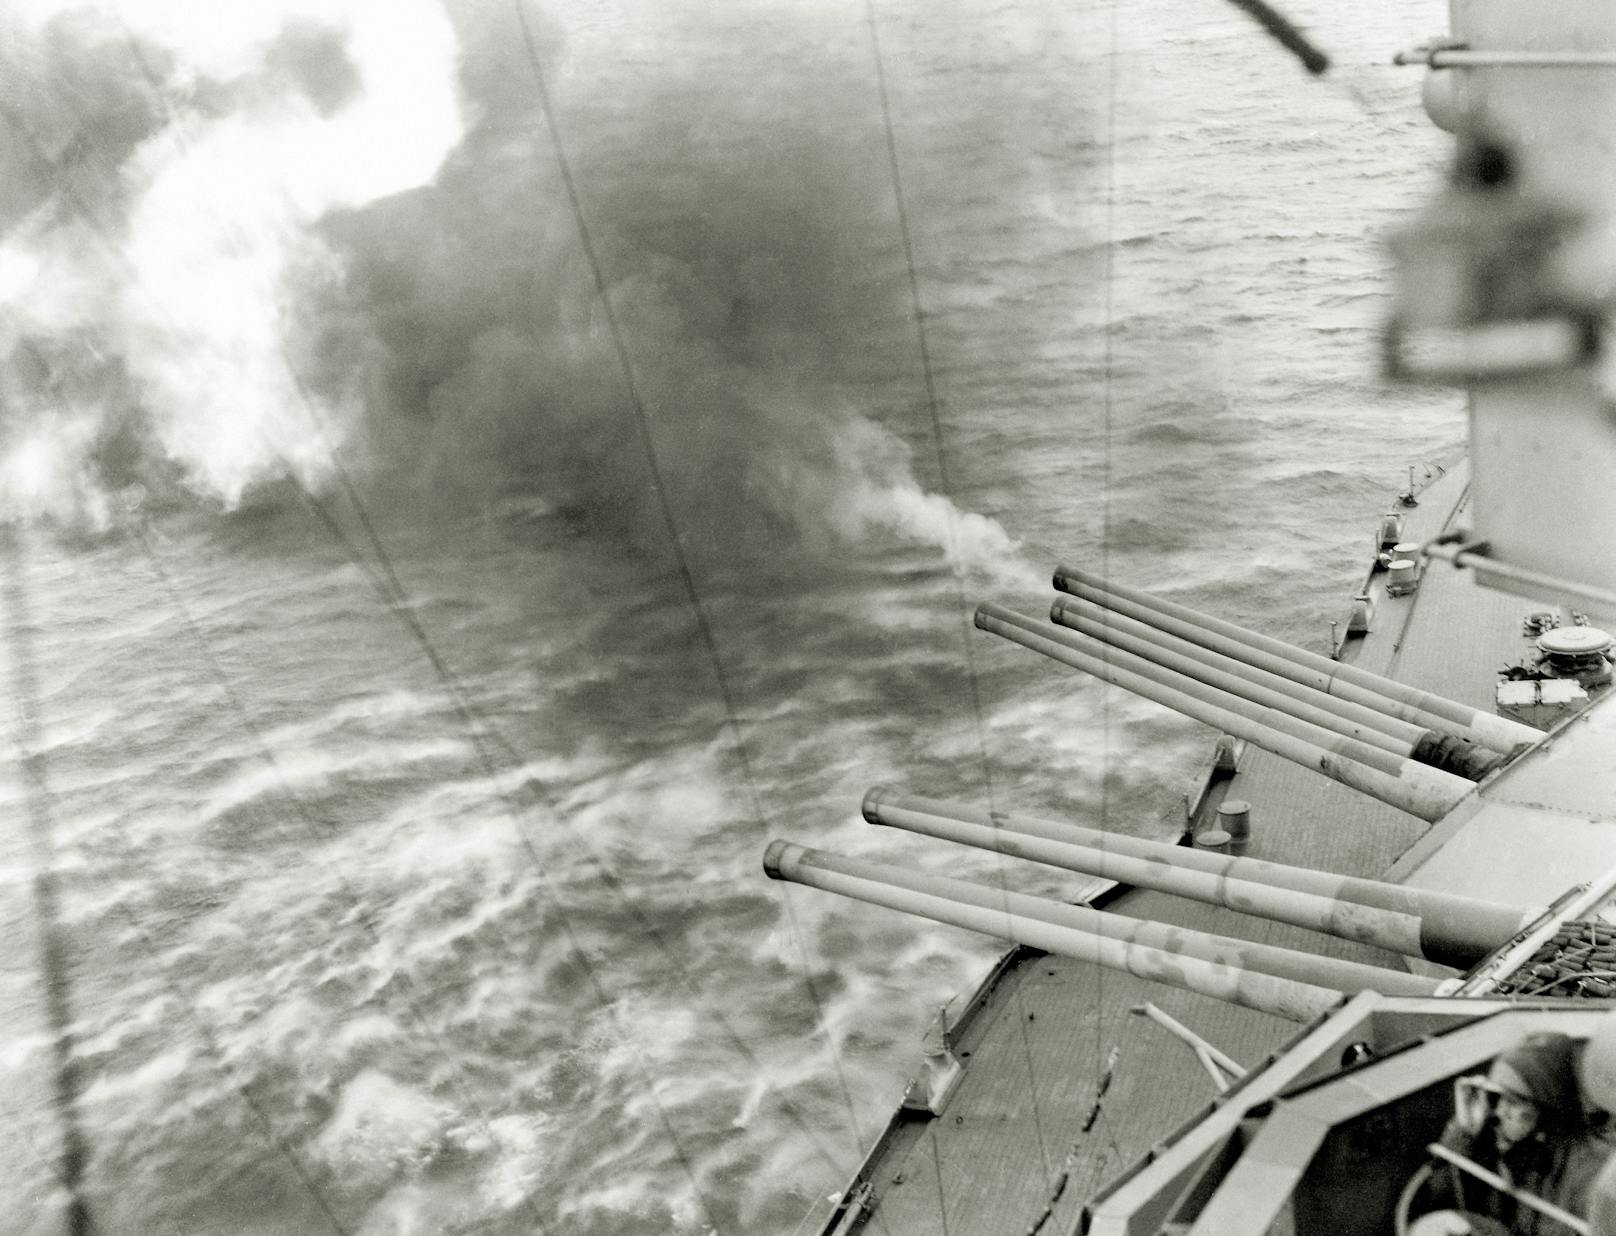 Während der "Operation Overlord", der allierten Invasion Frankreichs, feuerten die Kanonen des Schlachtschiffes bis zu 17 Meilen landeinwärts auf deutsche Stellungen. Aufnahme vom 6. Juni 1944